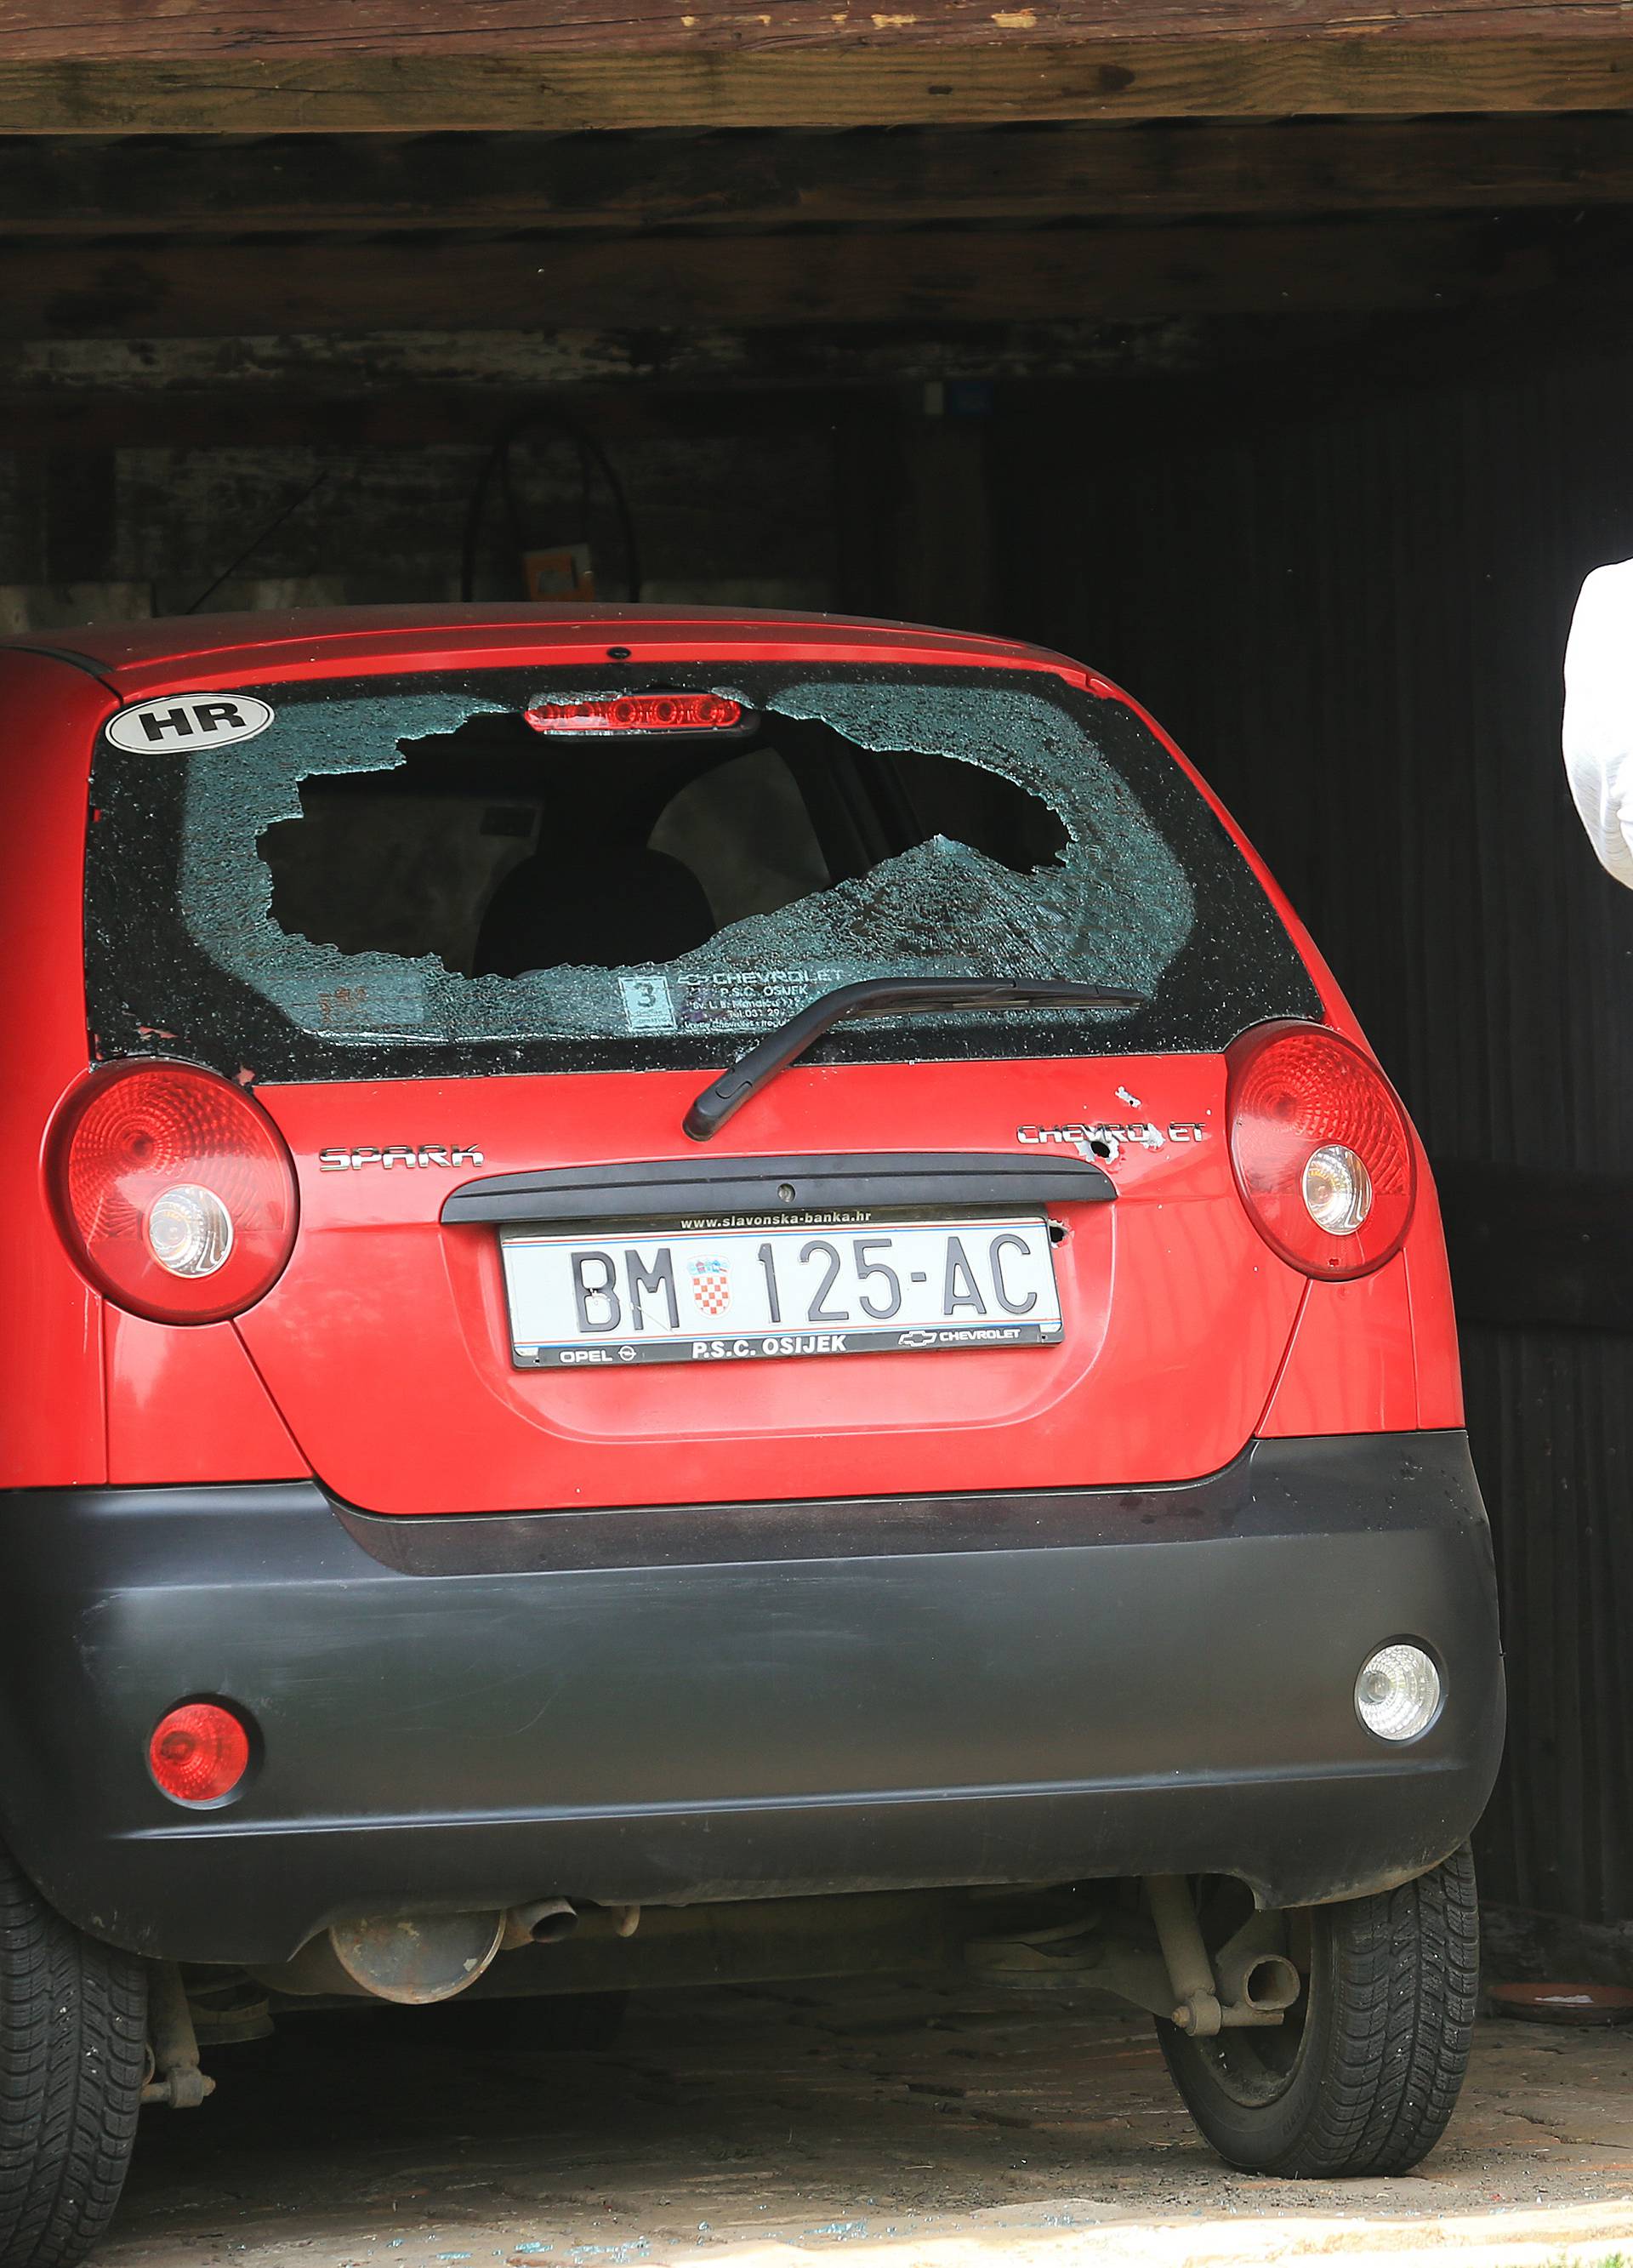 Očevid nakon opsade: Izrešetao automobile i stakla u Šećerani